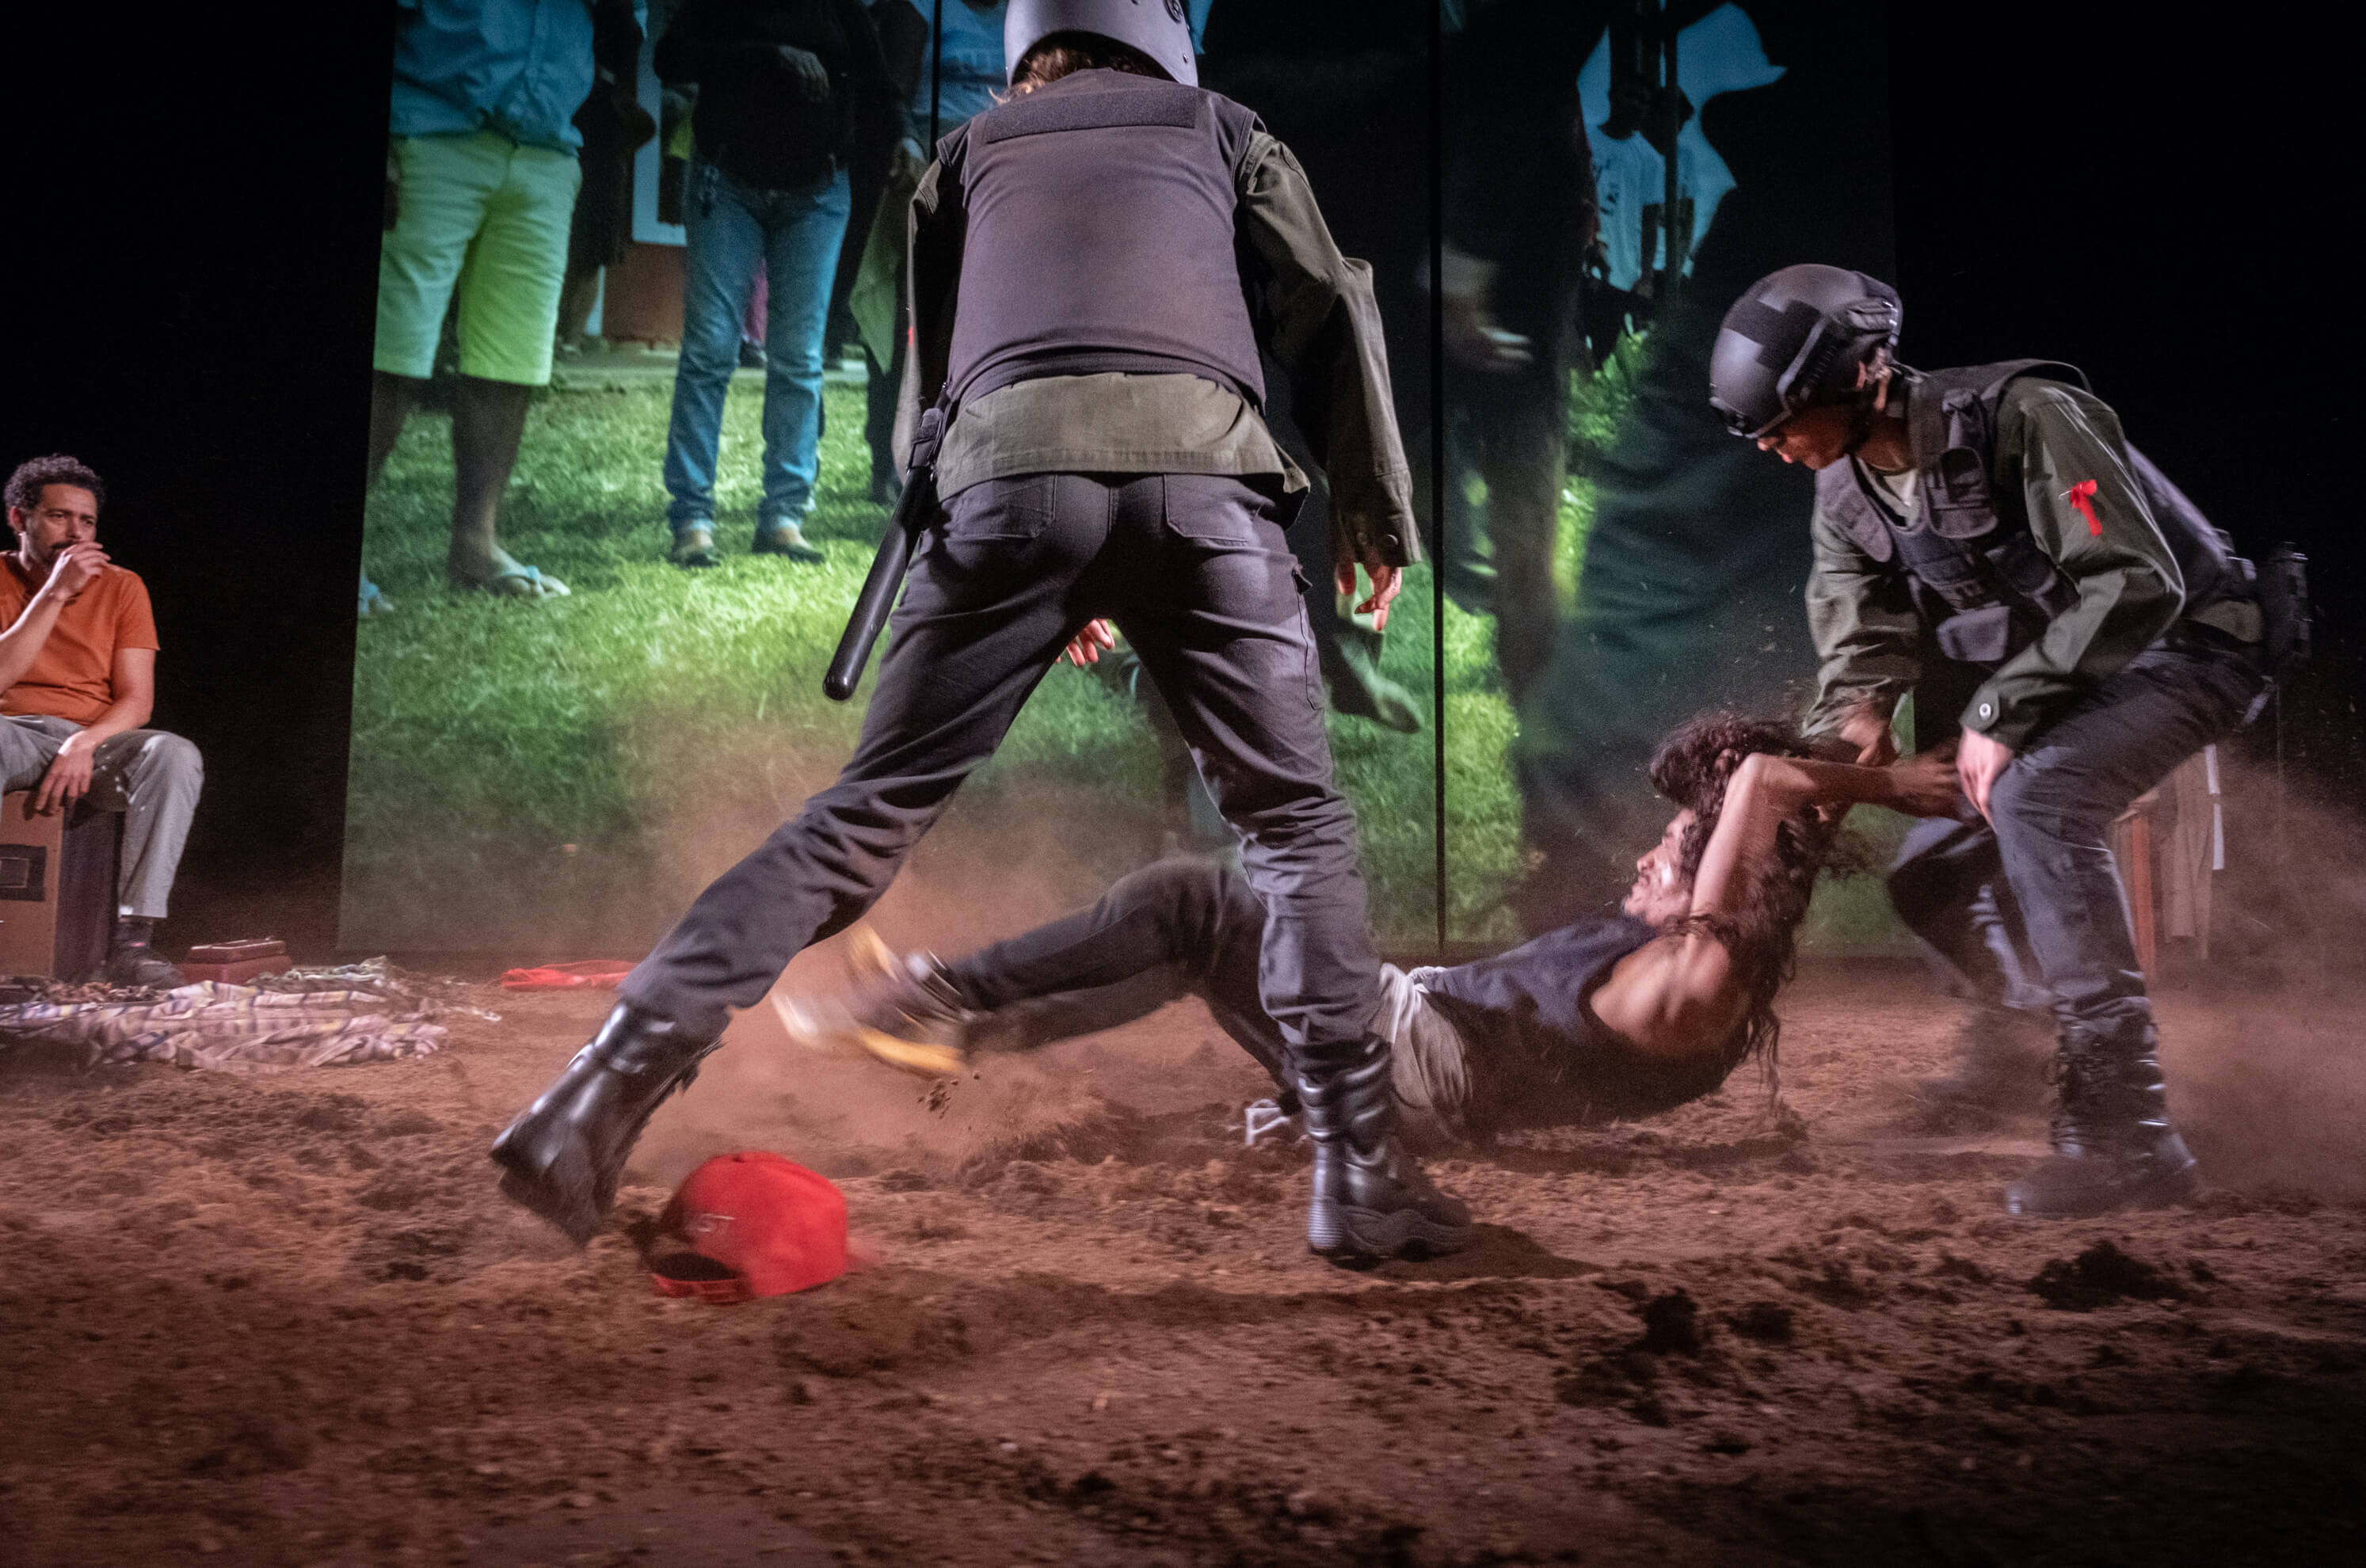 Fotografia de cena a cores. Dois intérpretes vestidos de polícias arrastam um terceiro intérprete pelo chão coberto de terra. 